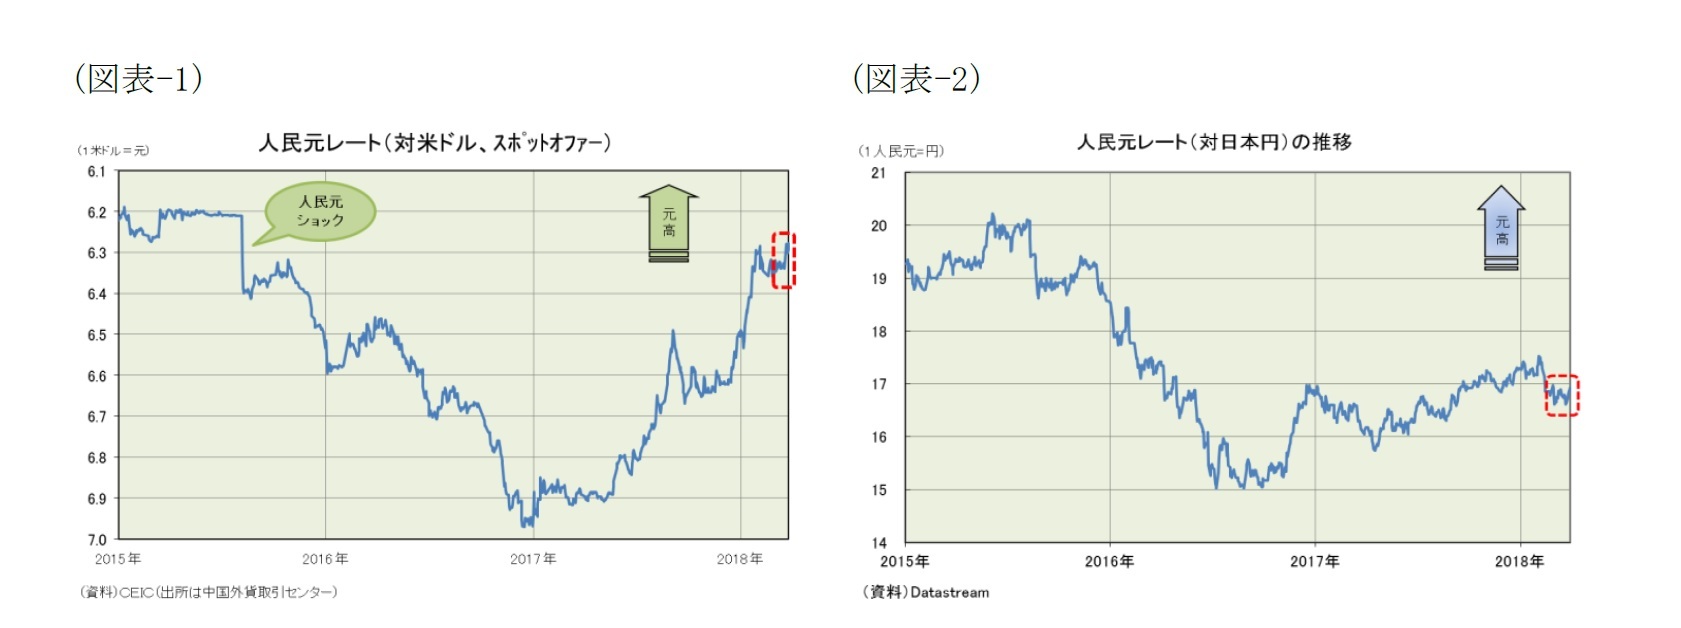 (図表-1) 人民元レート(対米ドル、スポットオファー)/(図表-2) 人民元レート(対日本円)の推移